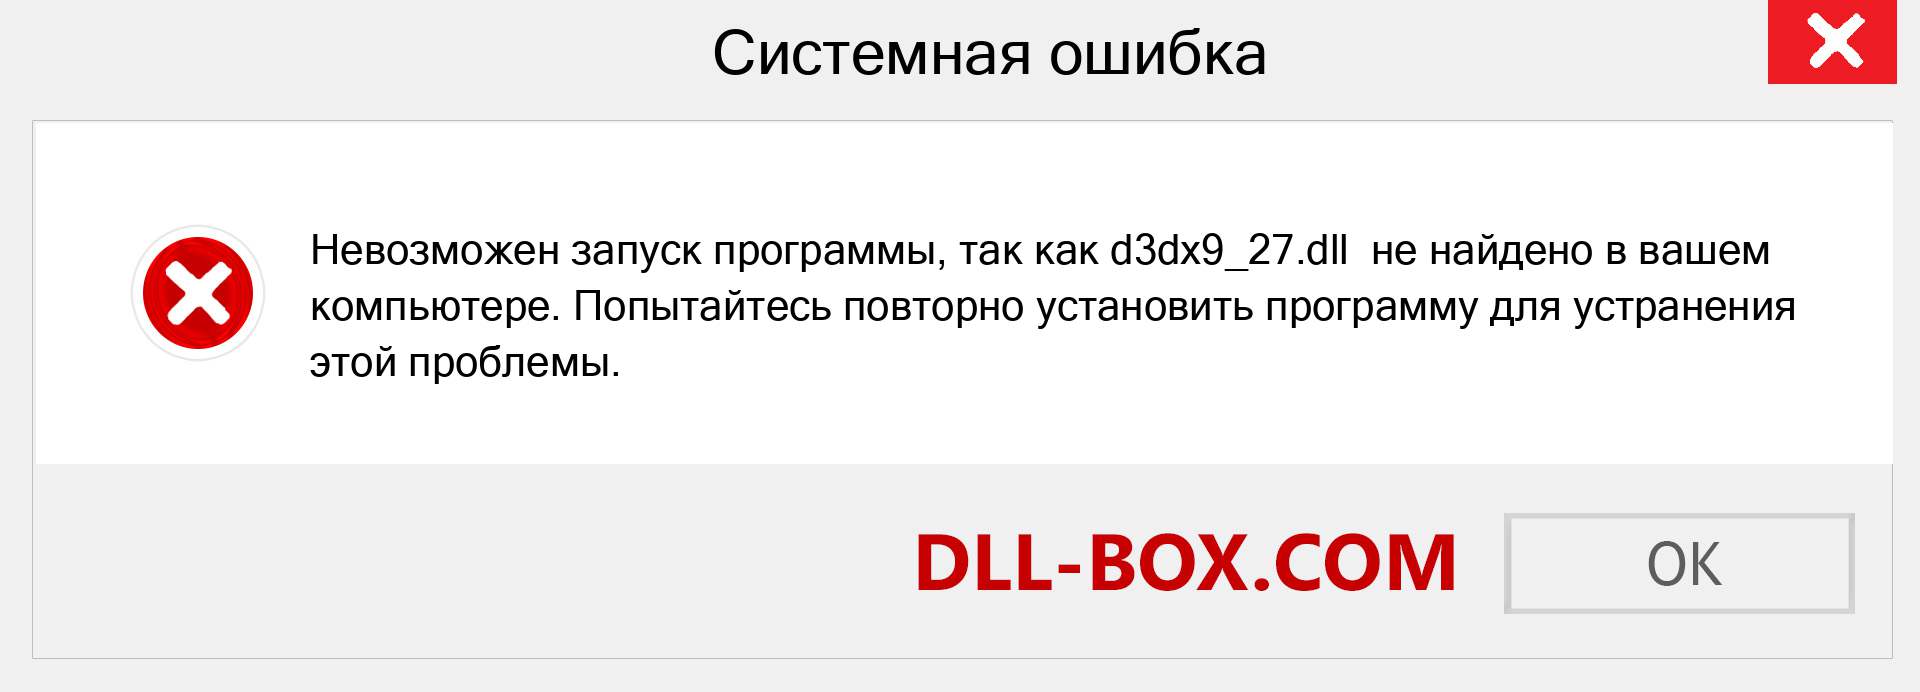 D3dx9_27.Dll Скачать Бесплатно Для Windows | DLL-BOX.COM